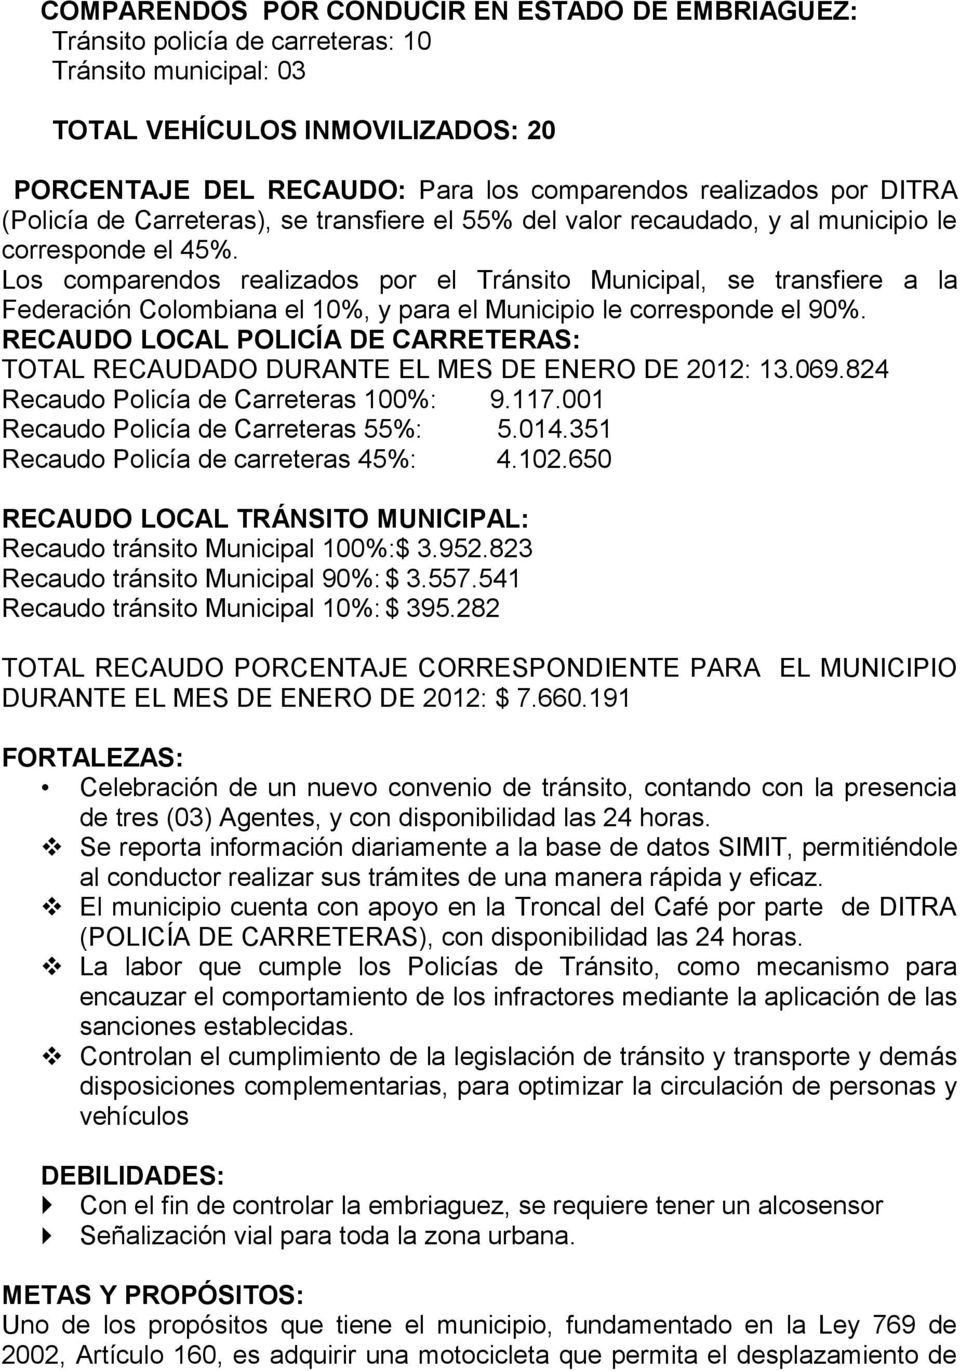 Los comparendos realizados por el Tránsito Municipal, se transfiere a la Federación Colombiana el 10%, y para el Municipio le corresponde el 90%.